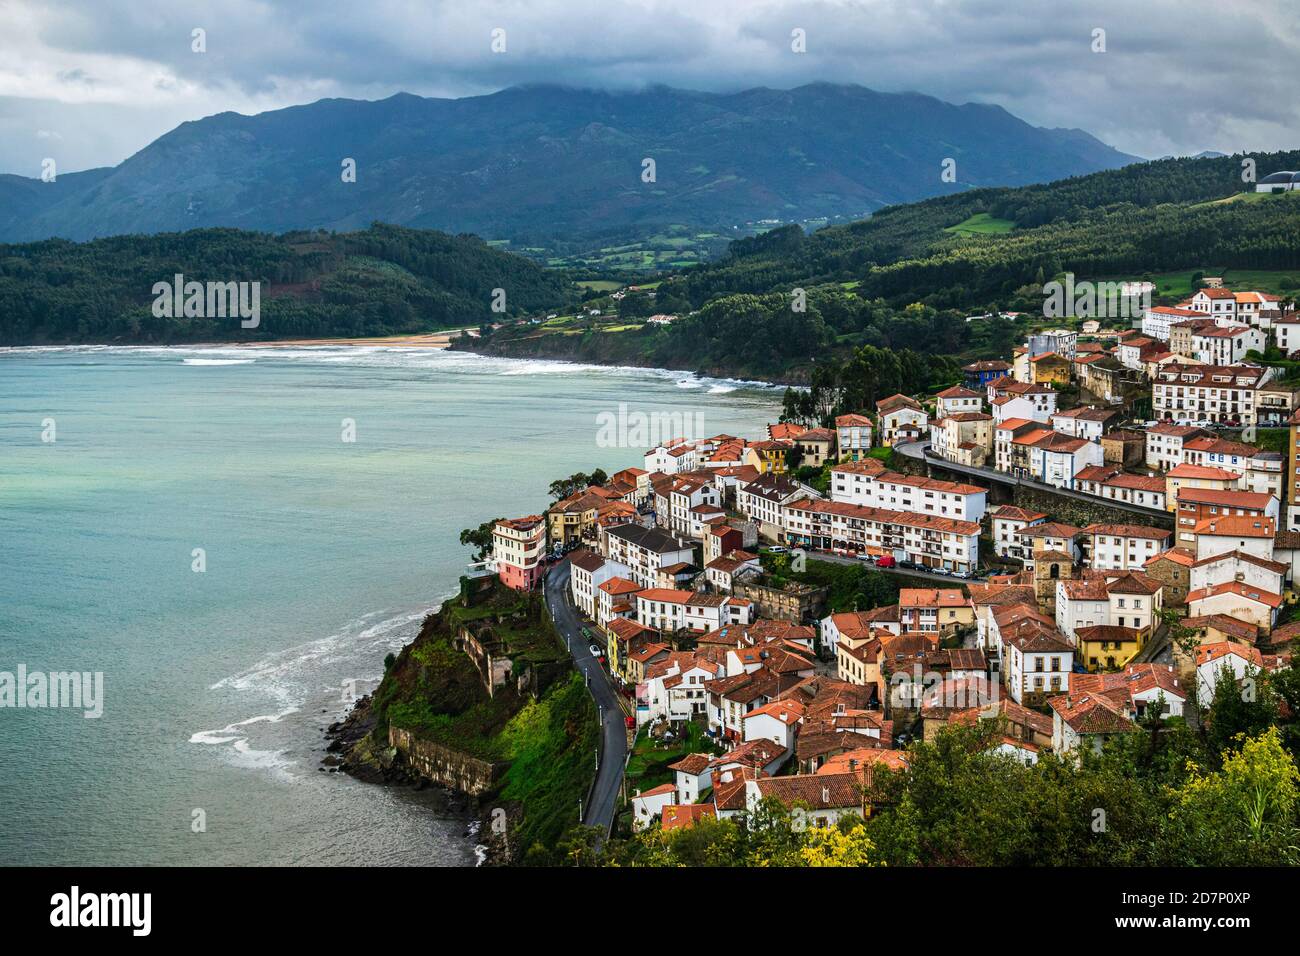 Pittoresco paesaggio costiero. Il piccolo villaggio di pescatori di Llastres nelle Asturie, Costa Verde, Spagna. Foto Stock